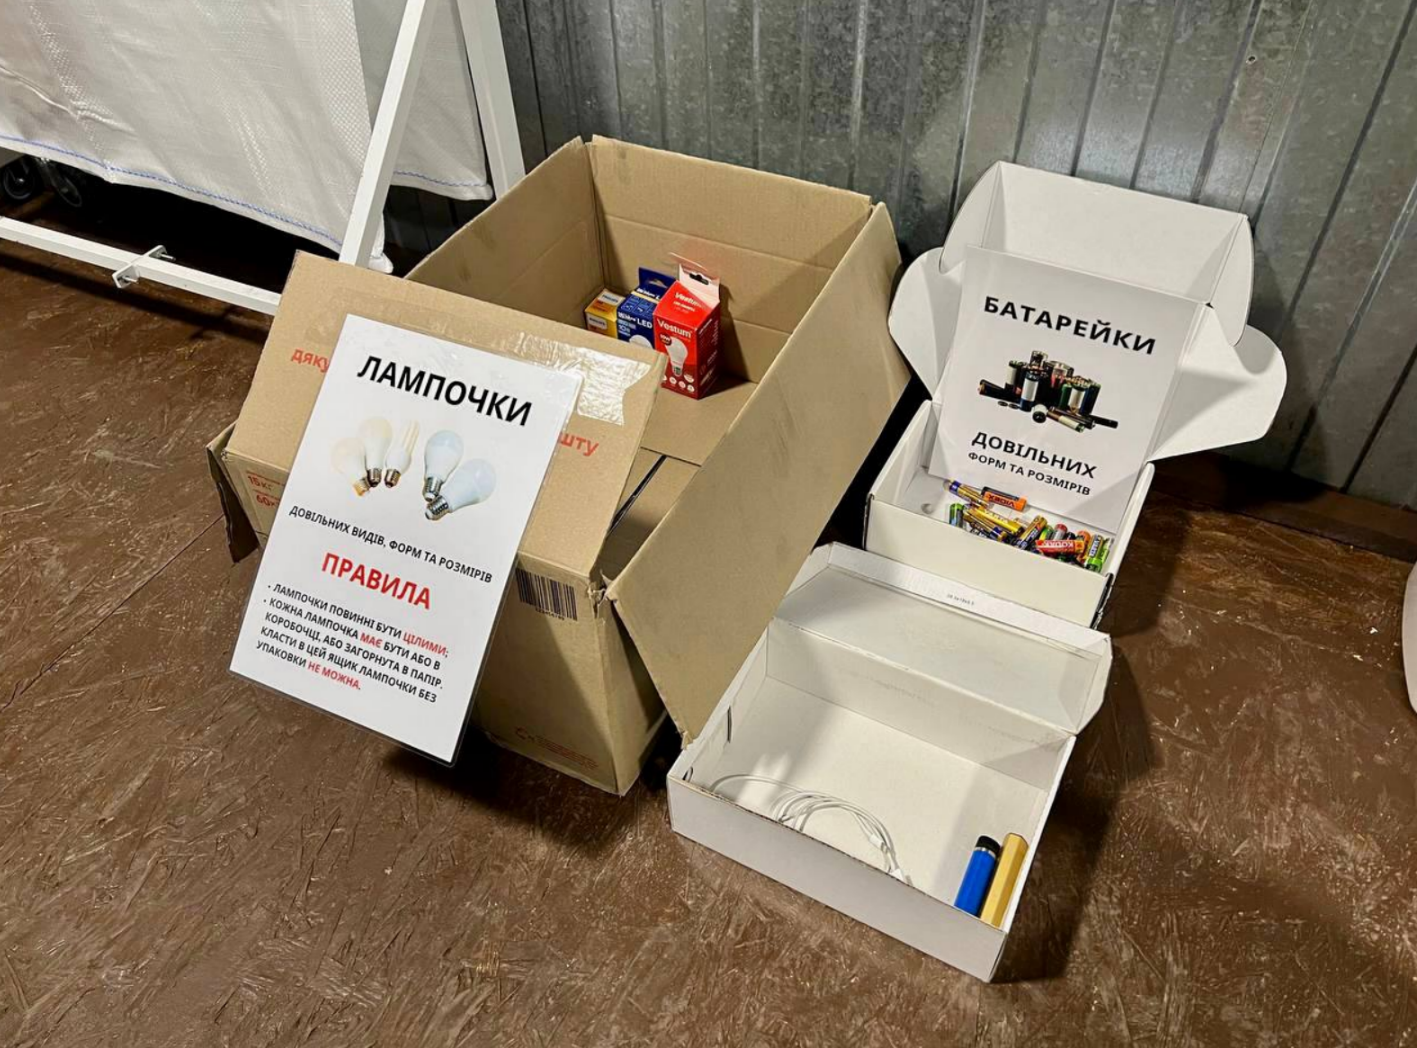 У Бучі відкрився перший Екохаб, де навчають сортувати сміття: фото